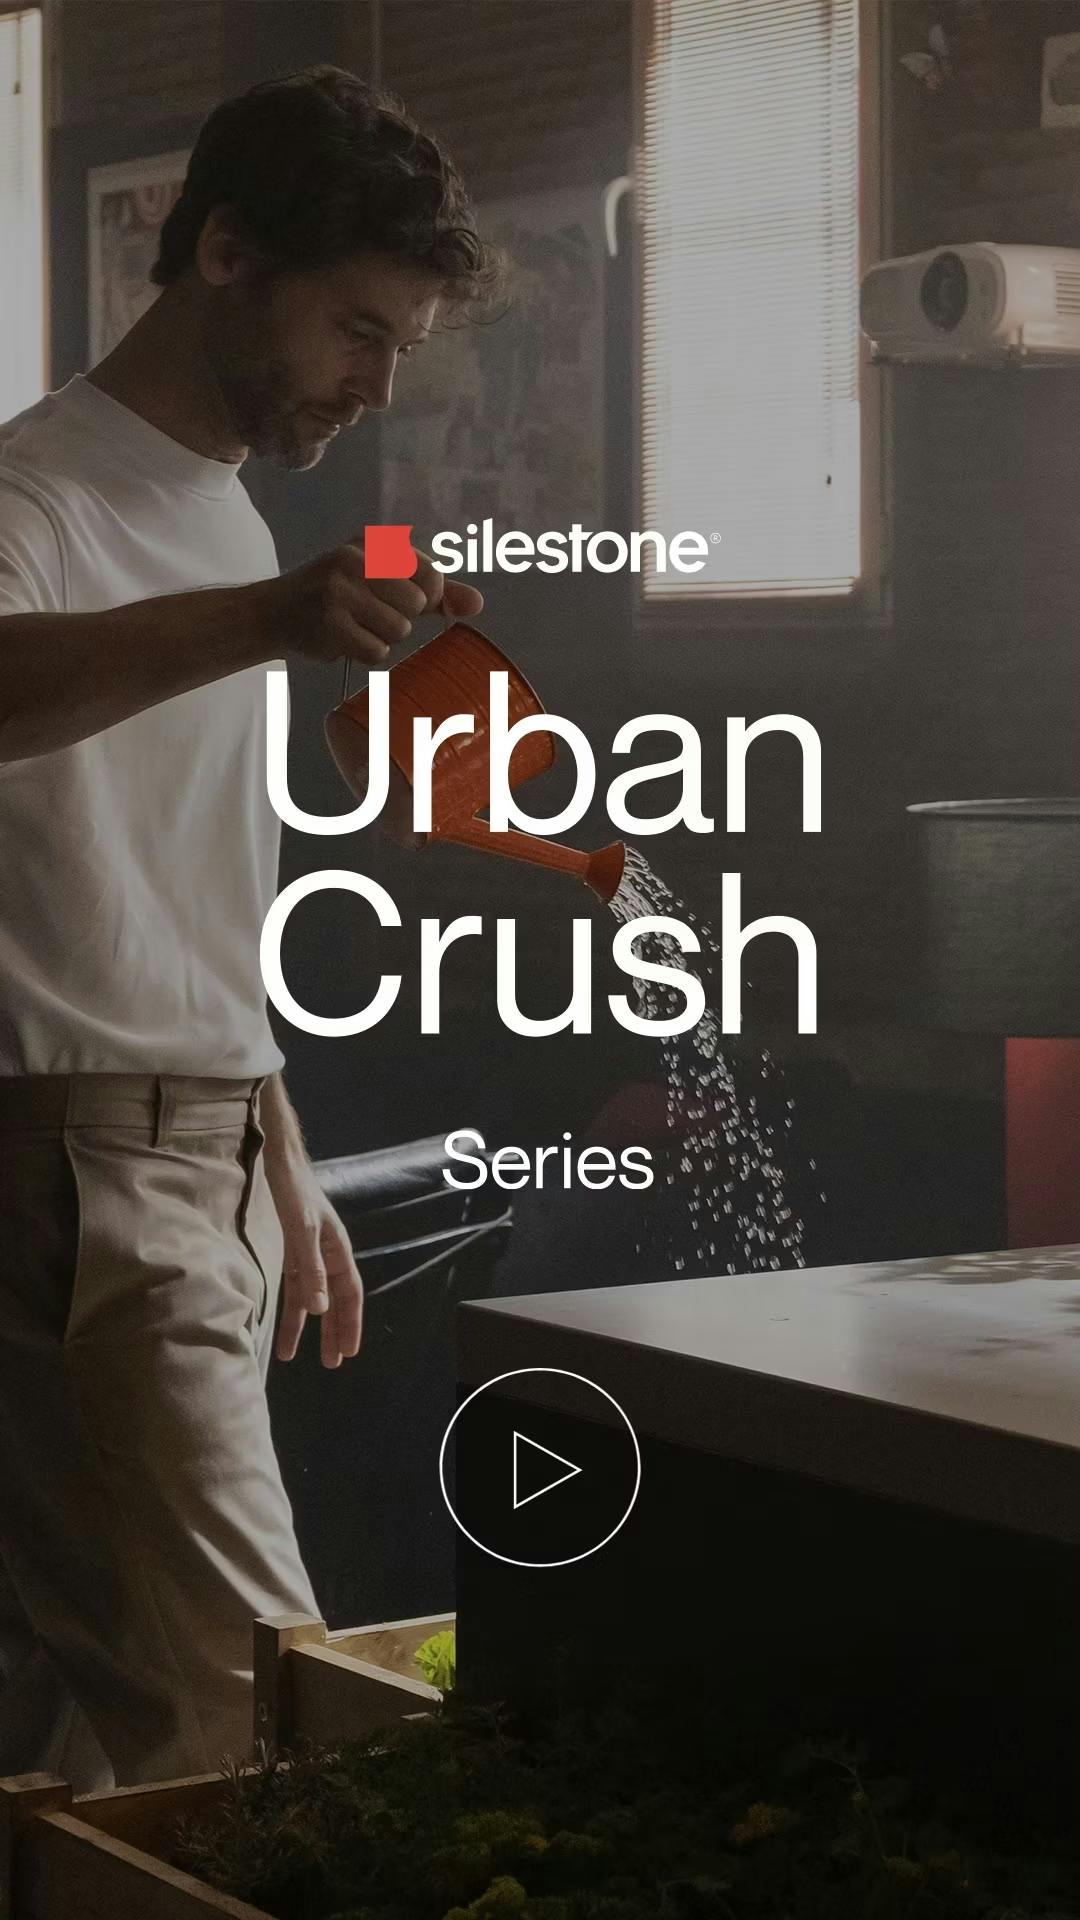 Numero immagine 33 della sezione corrente di Silestone Urban Crush di Cosentino Italia